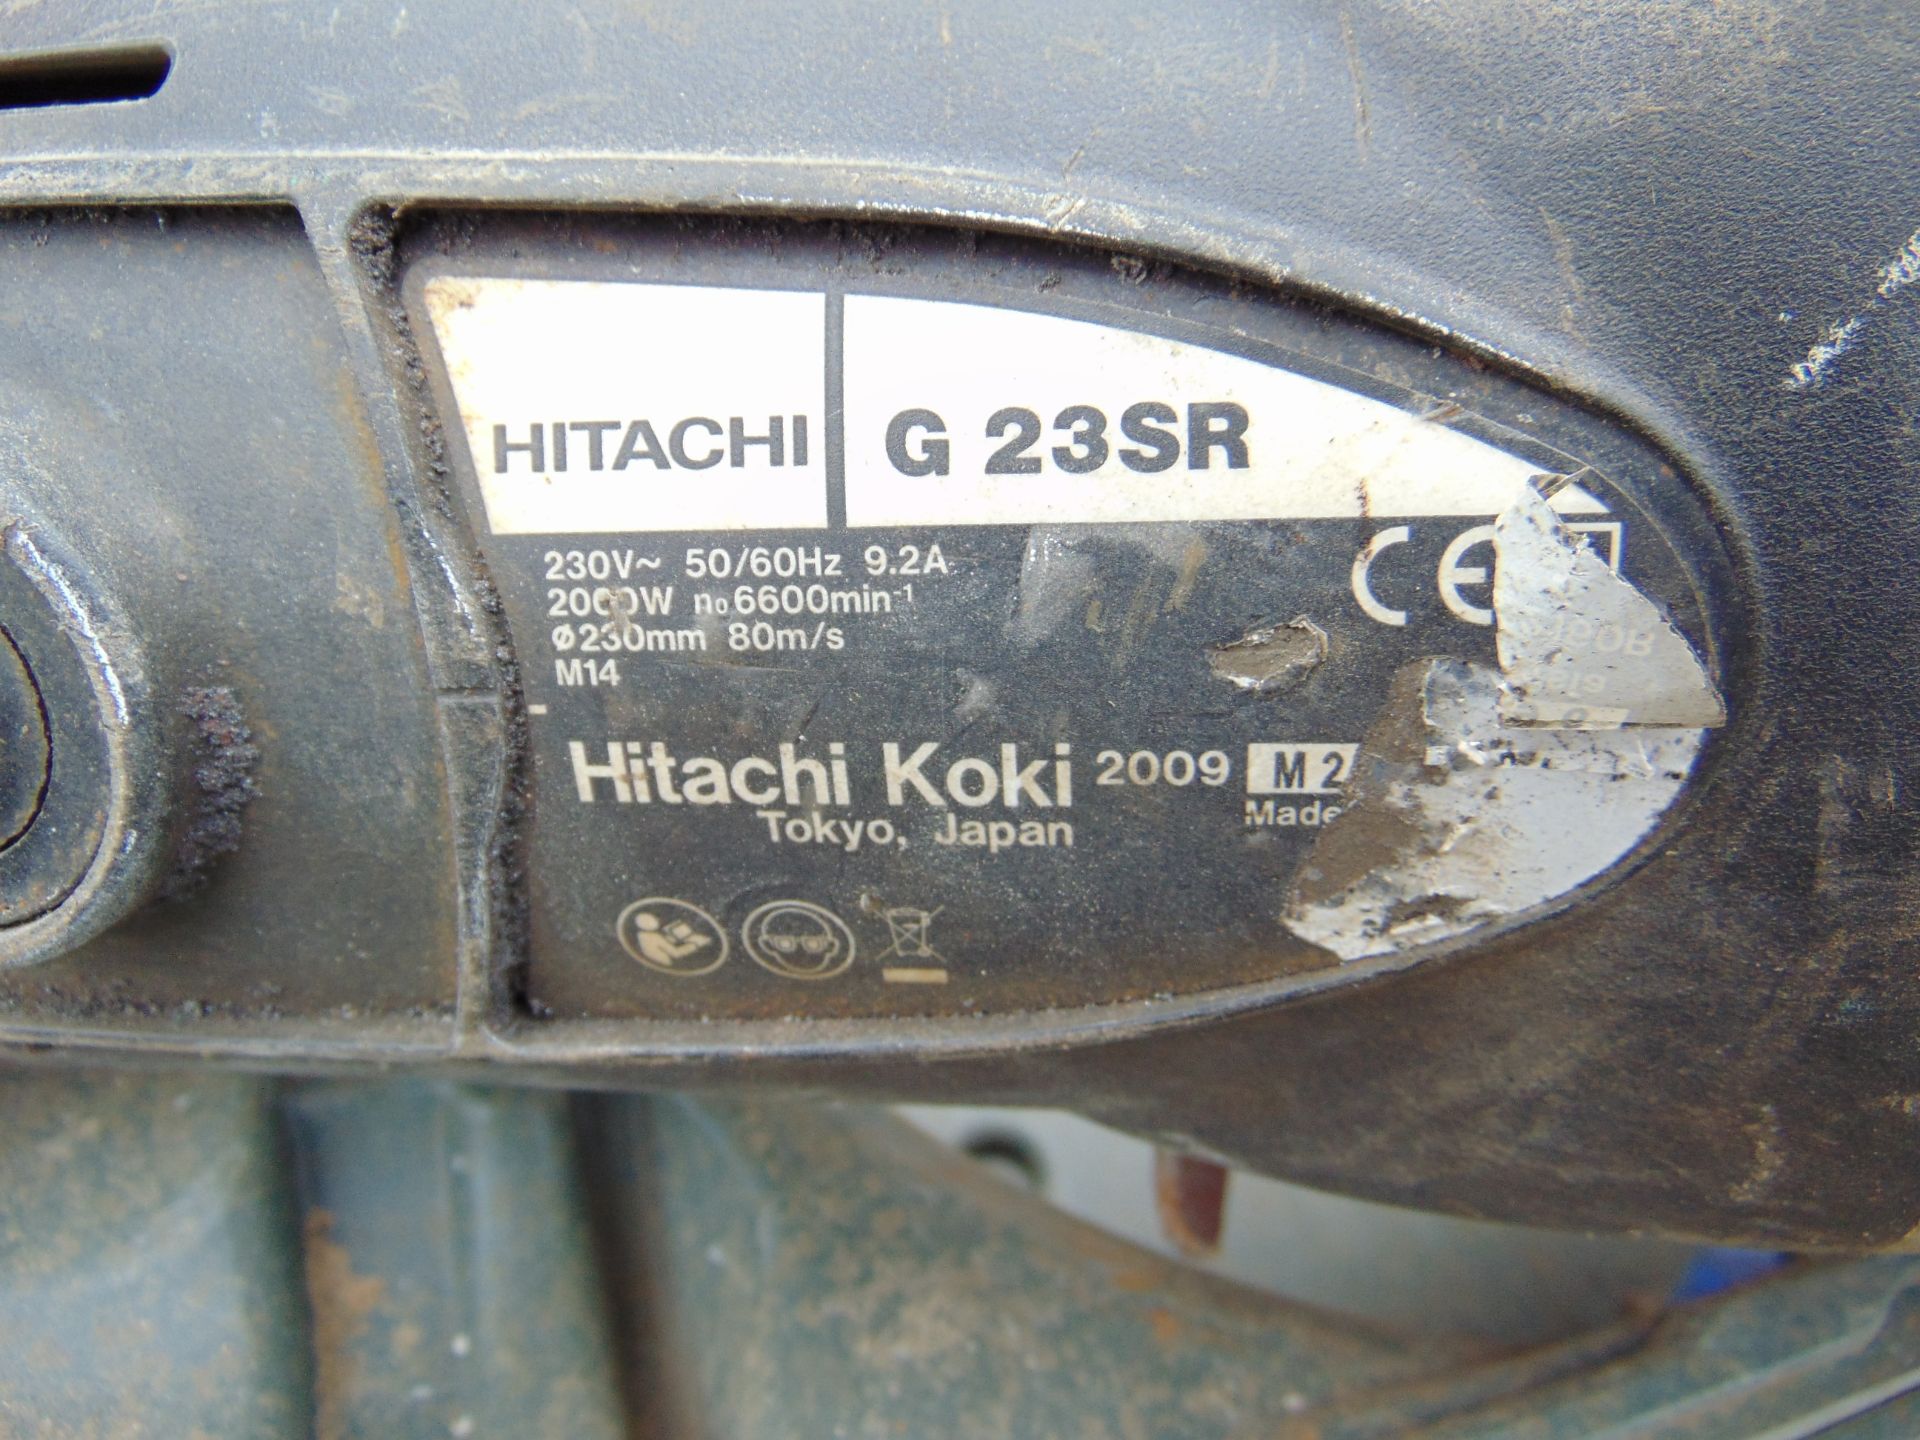 Hitachi G23SR Angle Grinder - Image 3 of 4